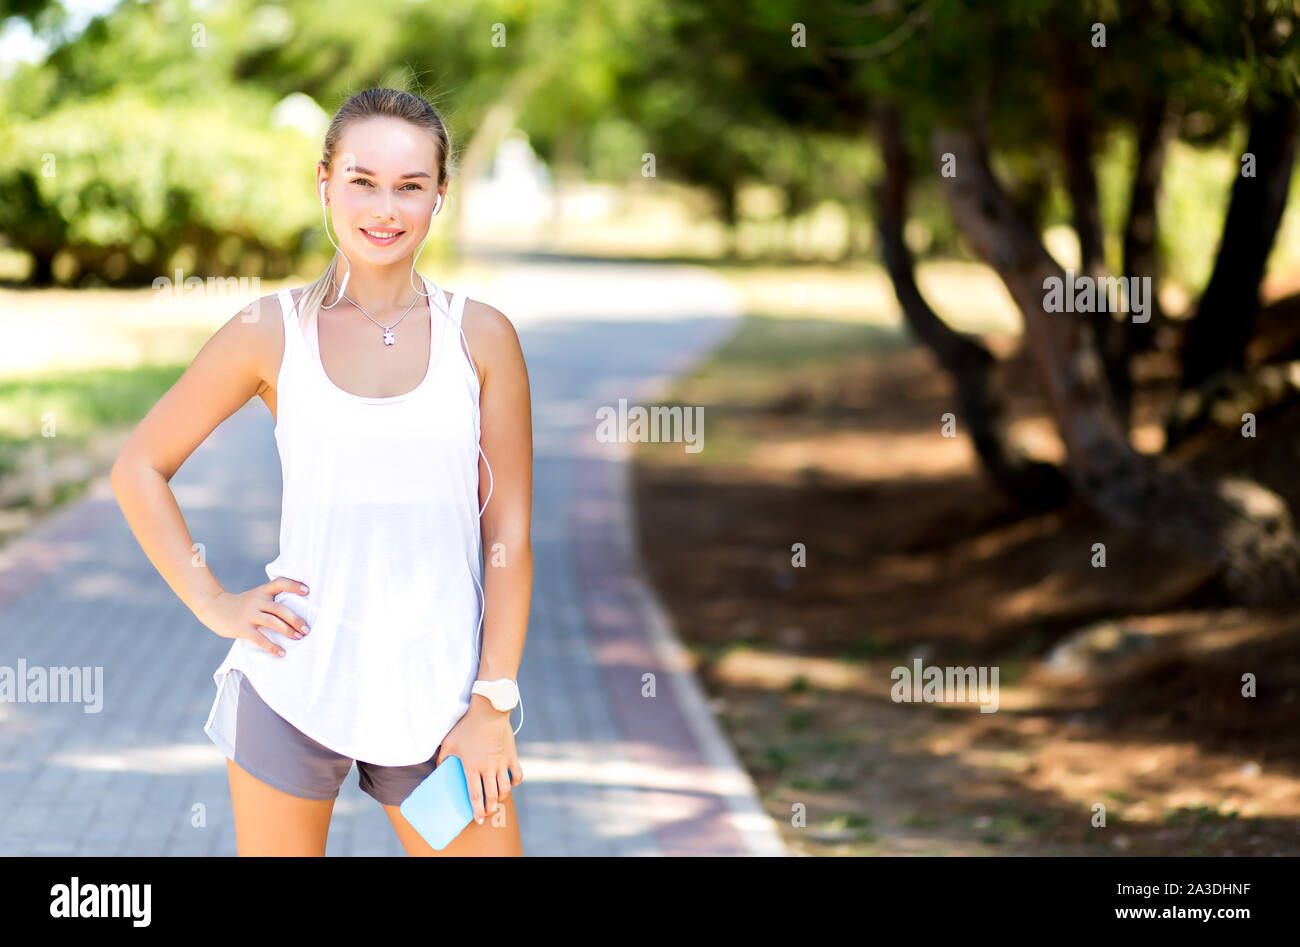 Runner Frau Joggen im Sommer Fitness Training. Laufen, Sport, gesunden, aktiven Lebensstil Konzept Stockfoto